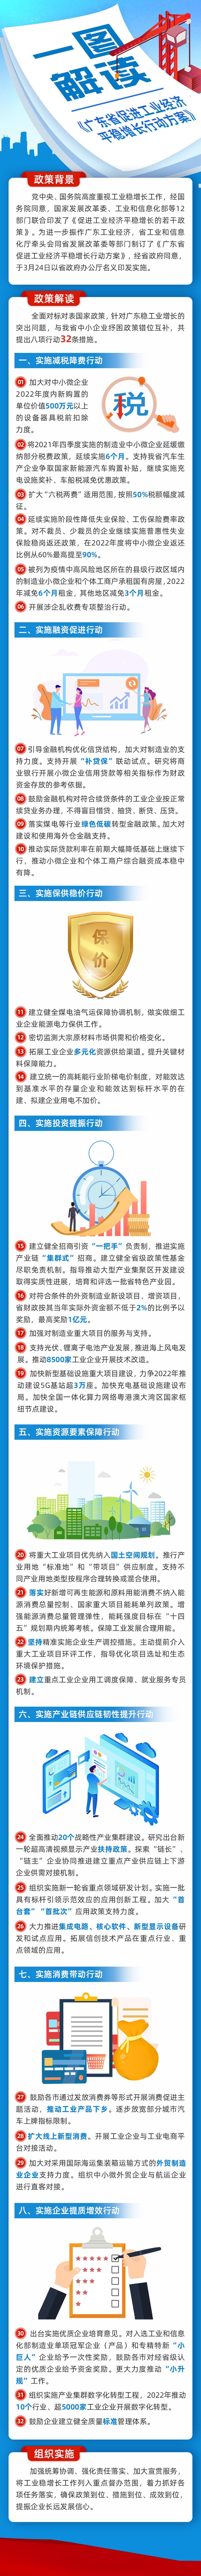 《广东省促进工业经济平稳增长行动方案》宣传长图.jpg